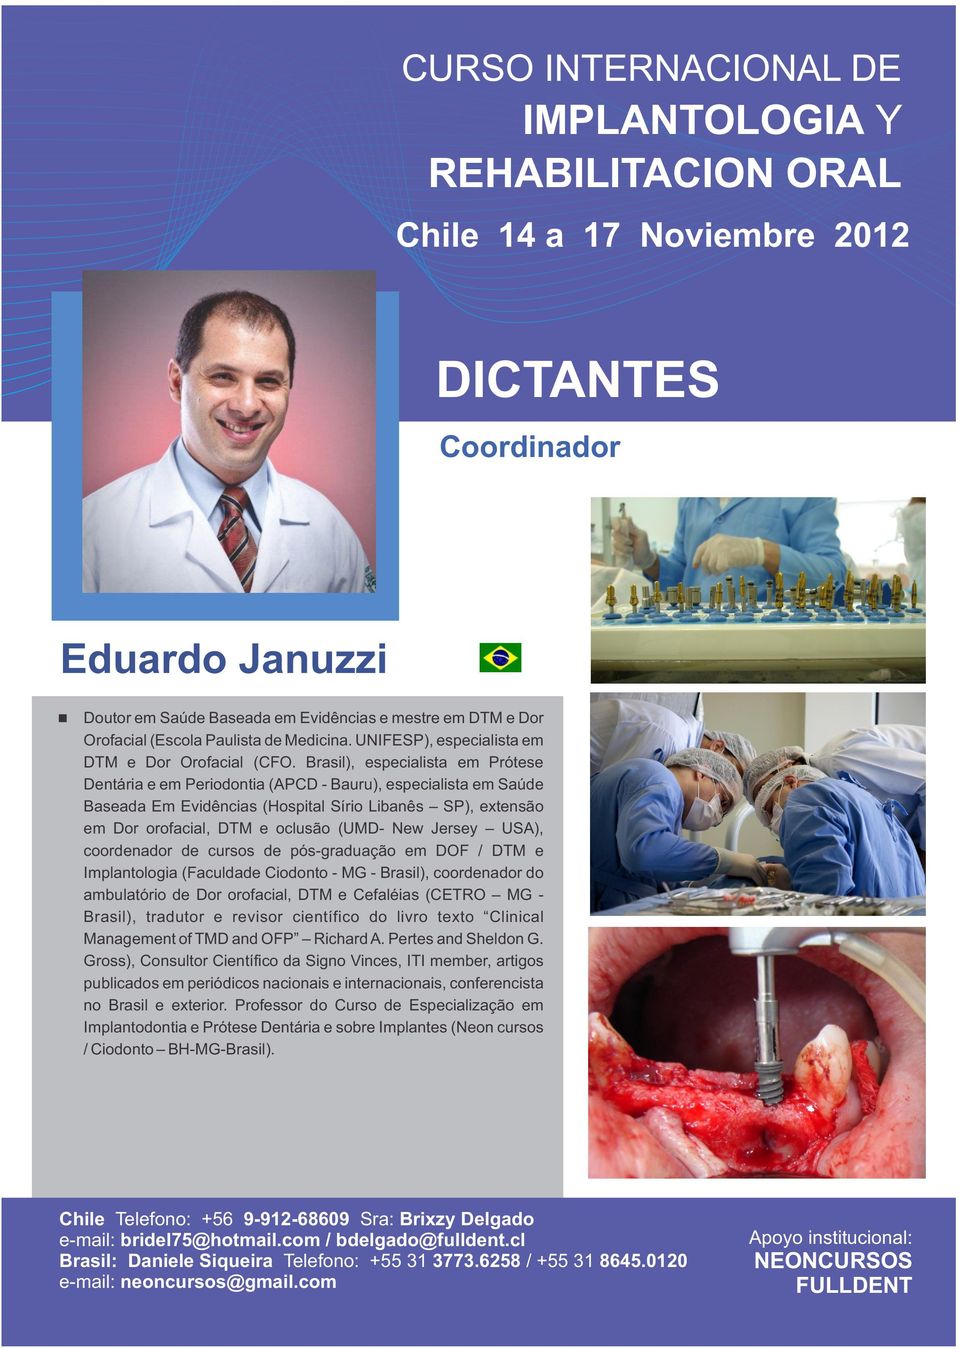 Jersey USA), coordenador de cursos de pós-graduação em DOF / DTM e Implantologia (Faculdade Ciodonto - MG - Brasil), coordenador do ambulatório de Dor orofacial, DTM e Cefaléias (CETRO MG - Brasil),